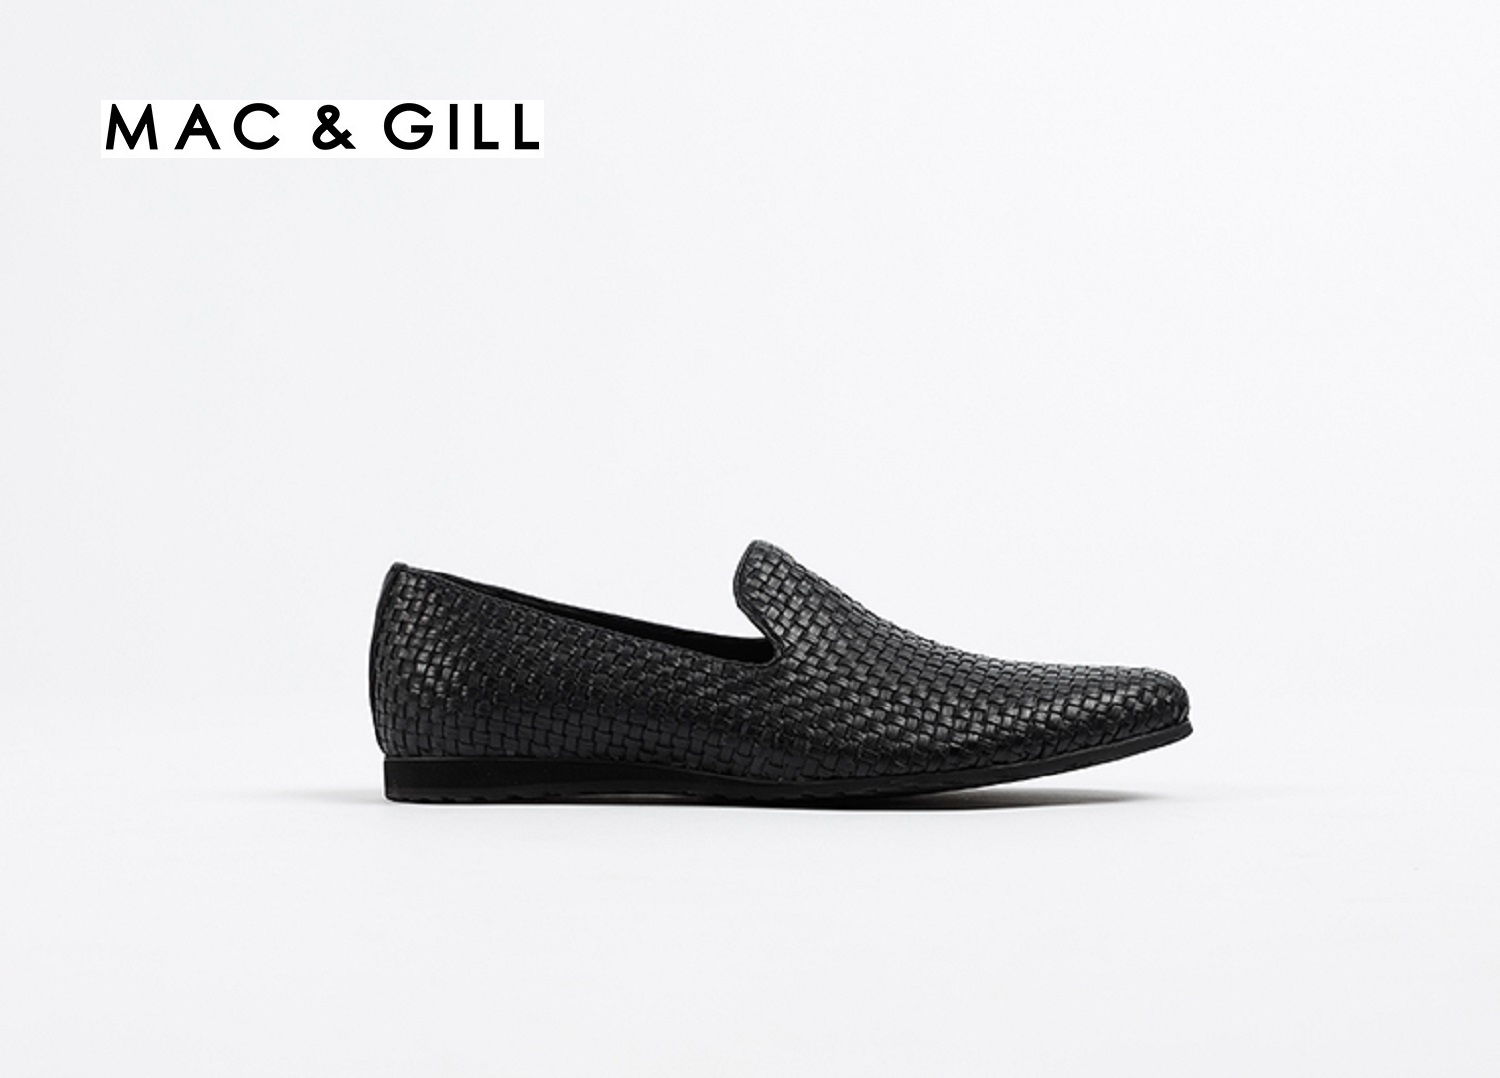 รองเท้าผู้ชายหนังแท้แบบสวมสีดำโลฟเฟอร์ Minimalist Woven Leather Mac&Gill